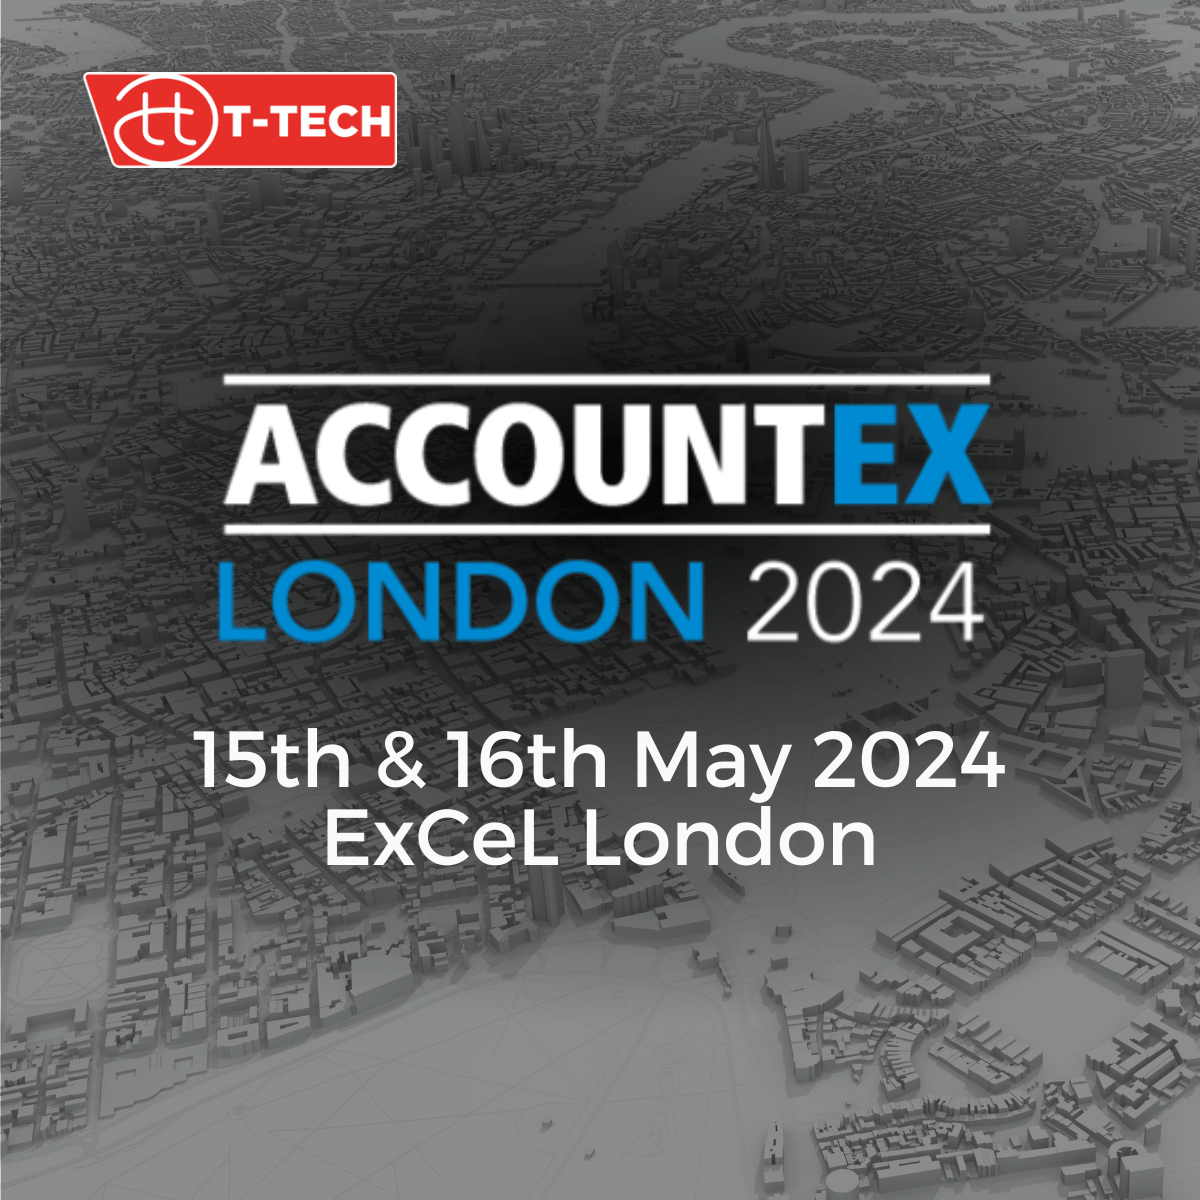 AccountEx London 2024 Advertising